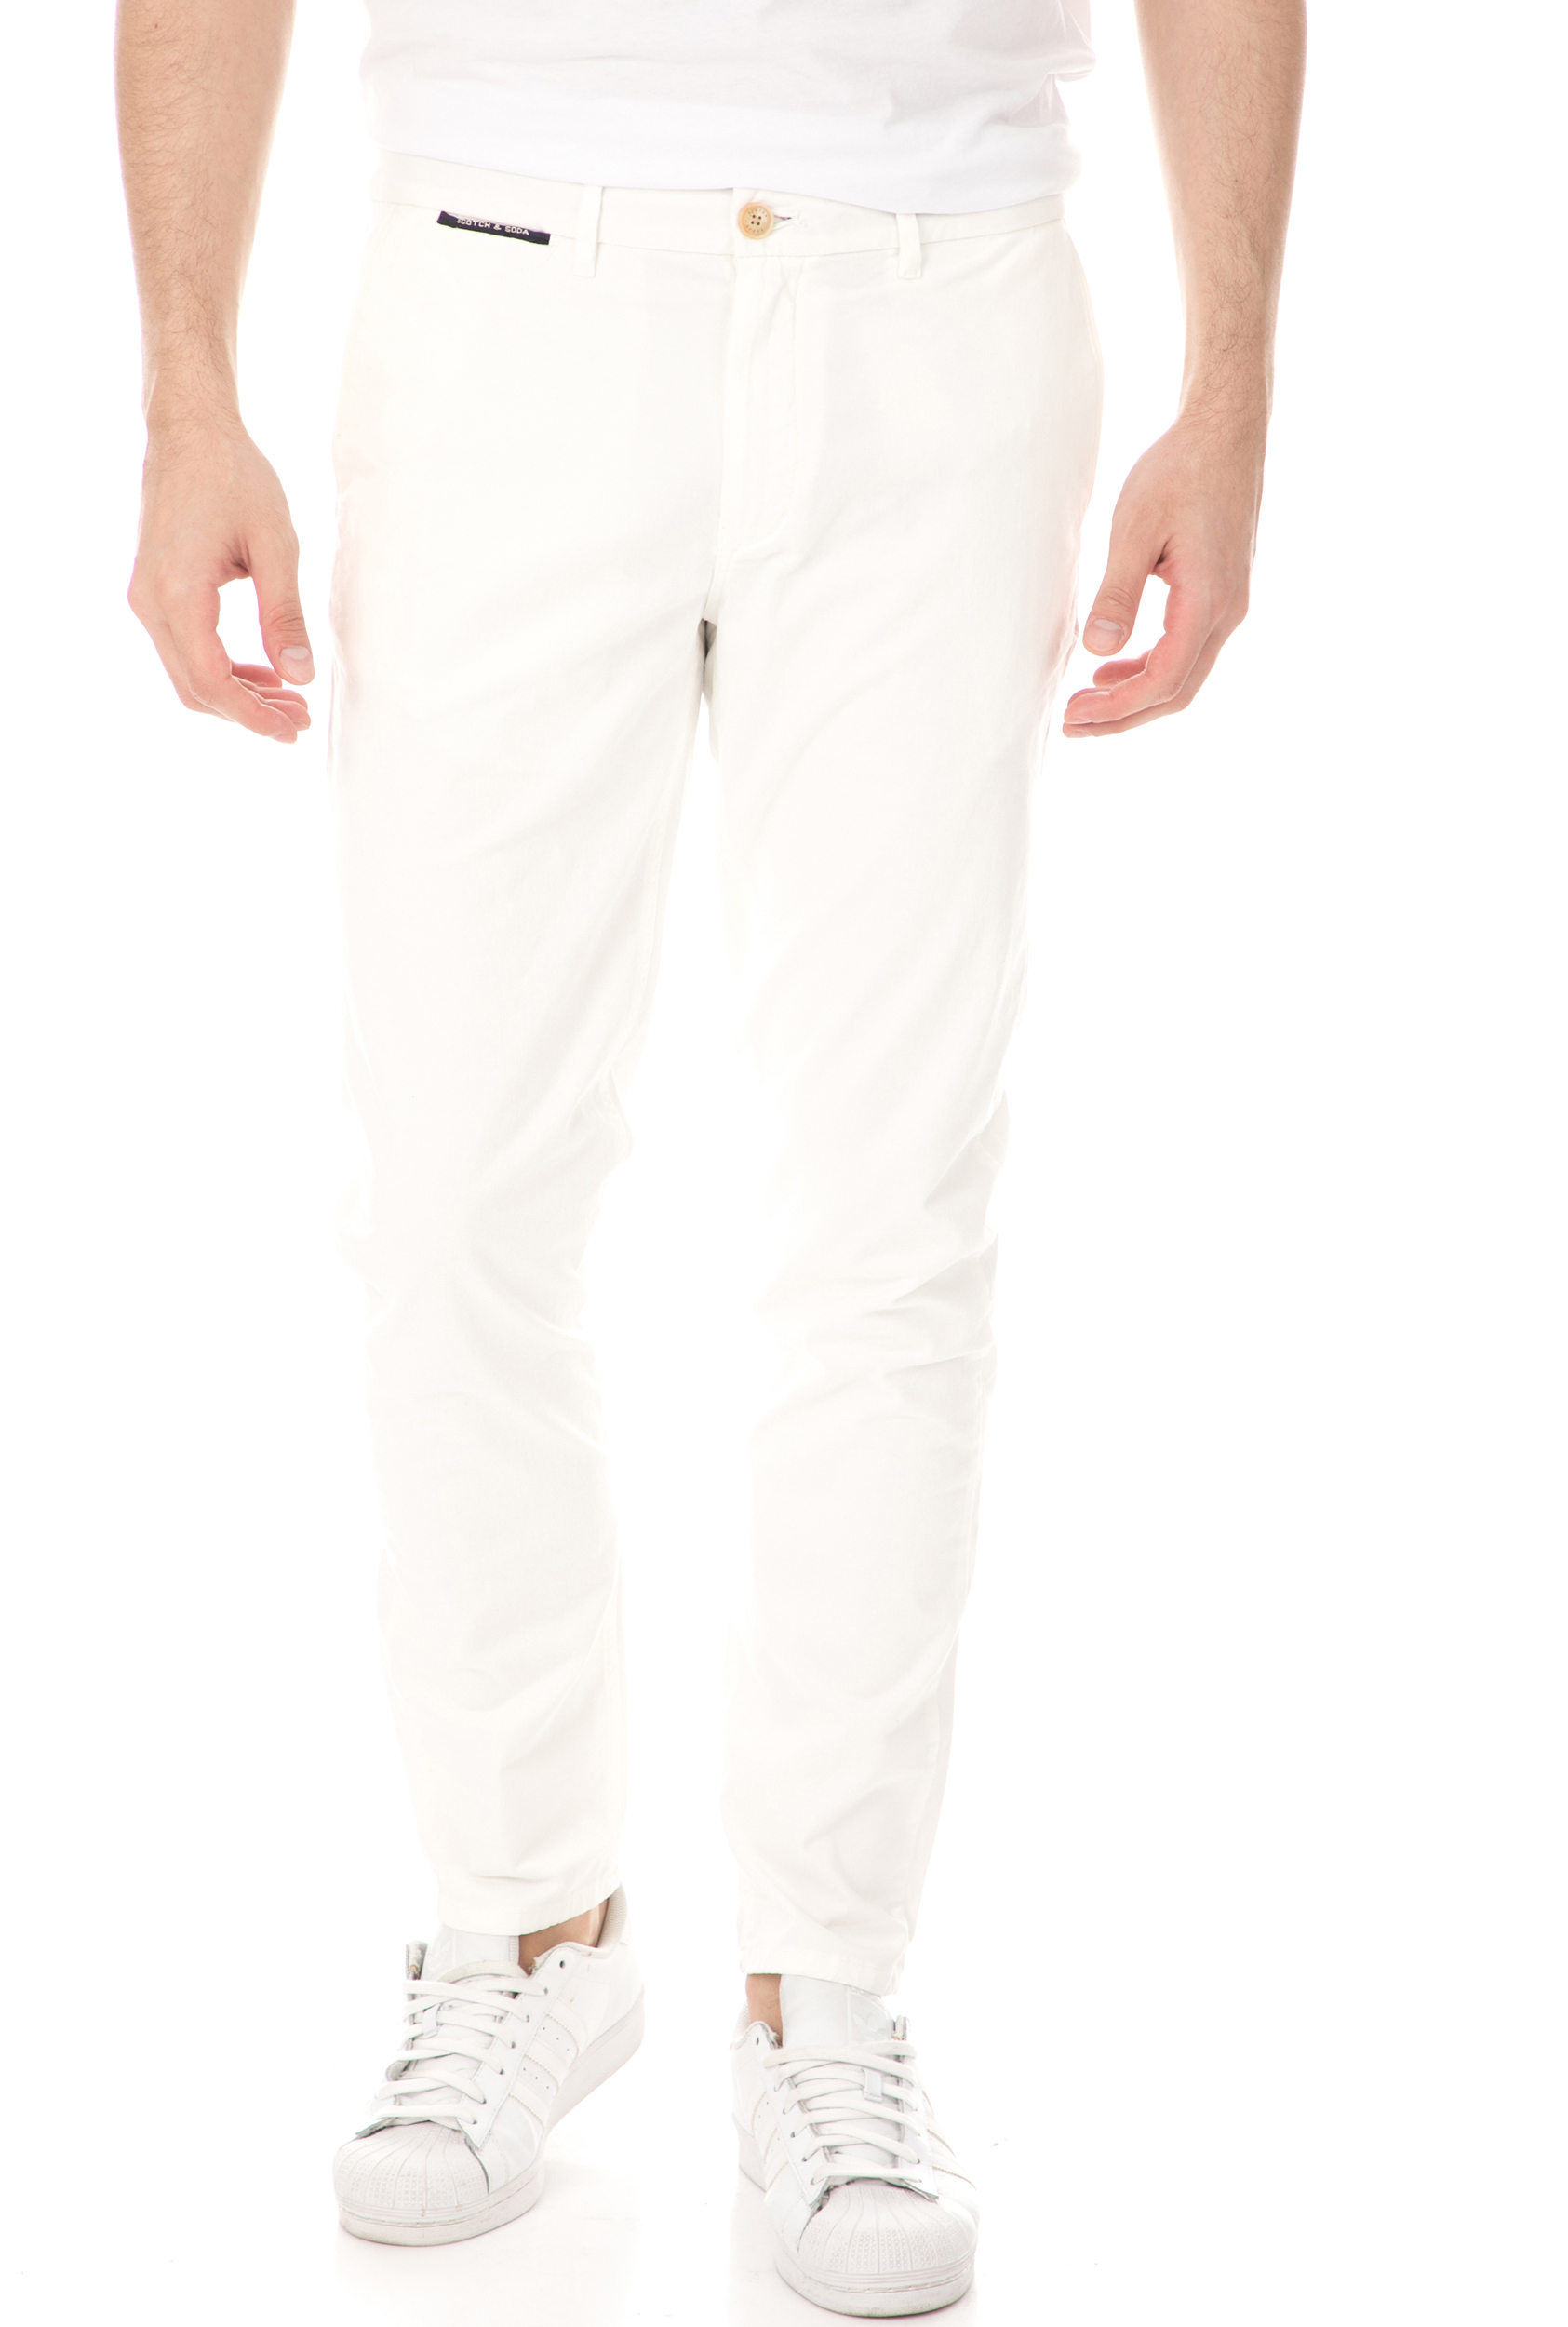 SCOTCH & SODA - Ανδρικό παντελόνι SCOTCH & SODA λευκό Ανδρικά/Ρούχα/Παντελόνια/Chinos